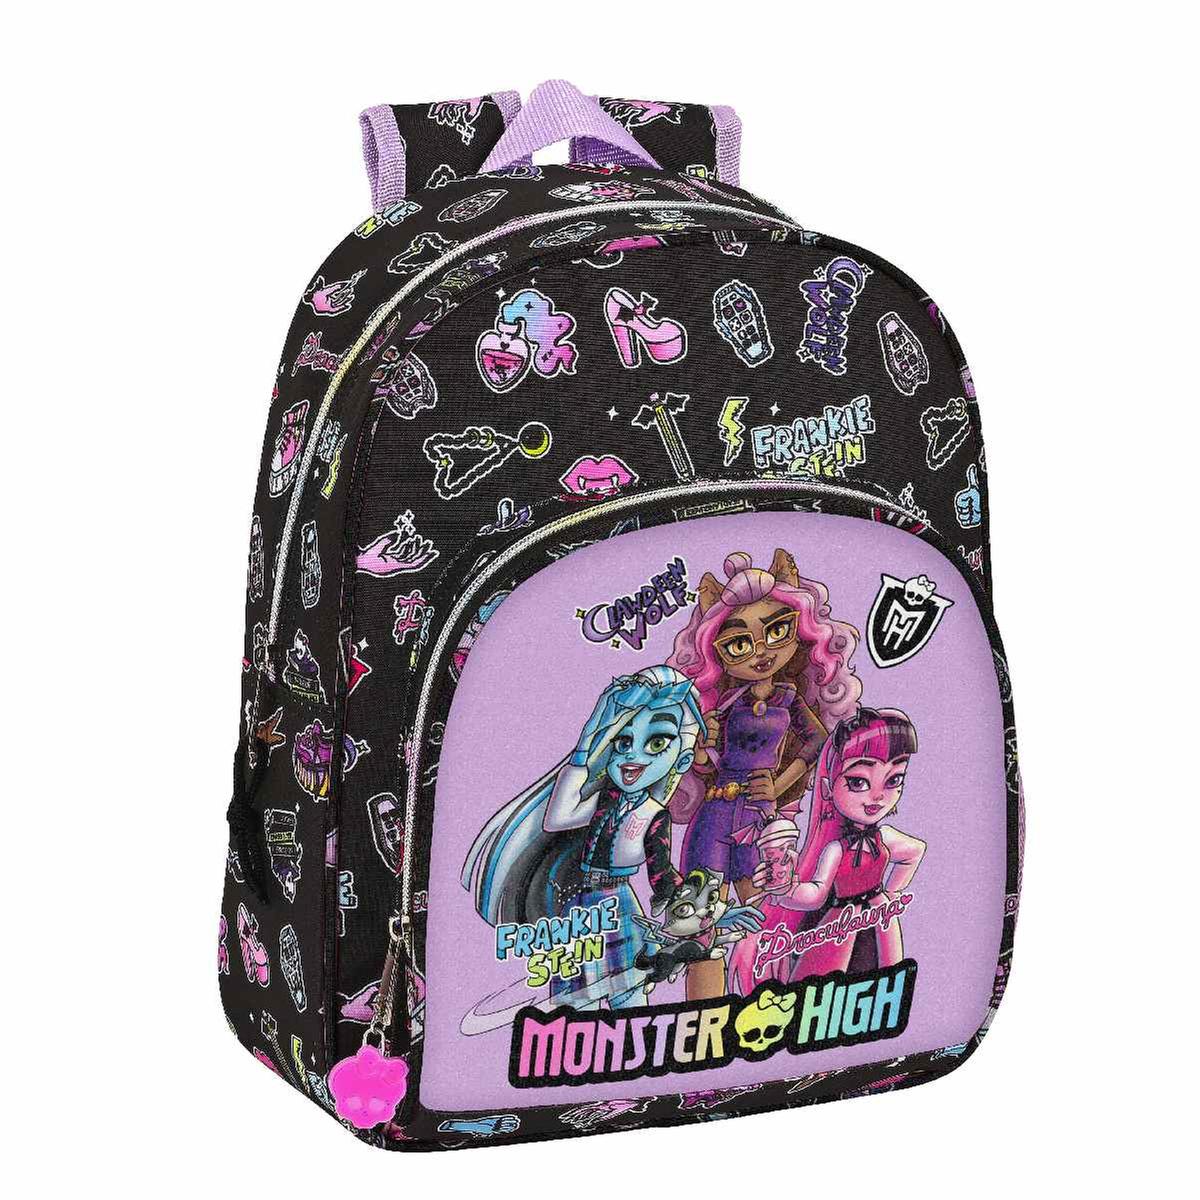 Preços baixos em Mochilas Monster High